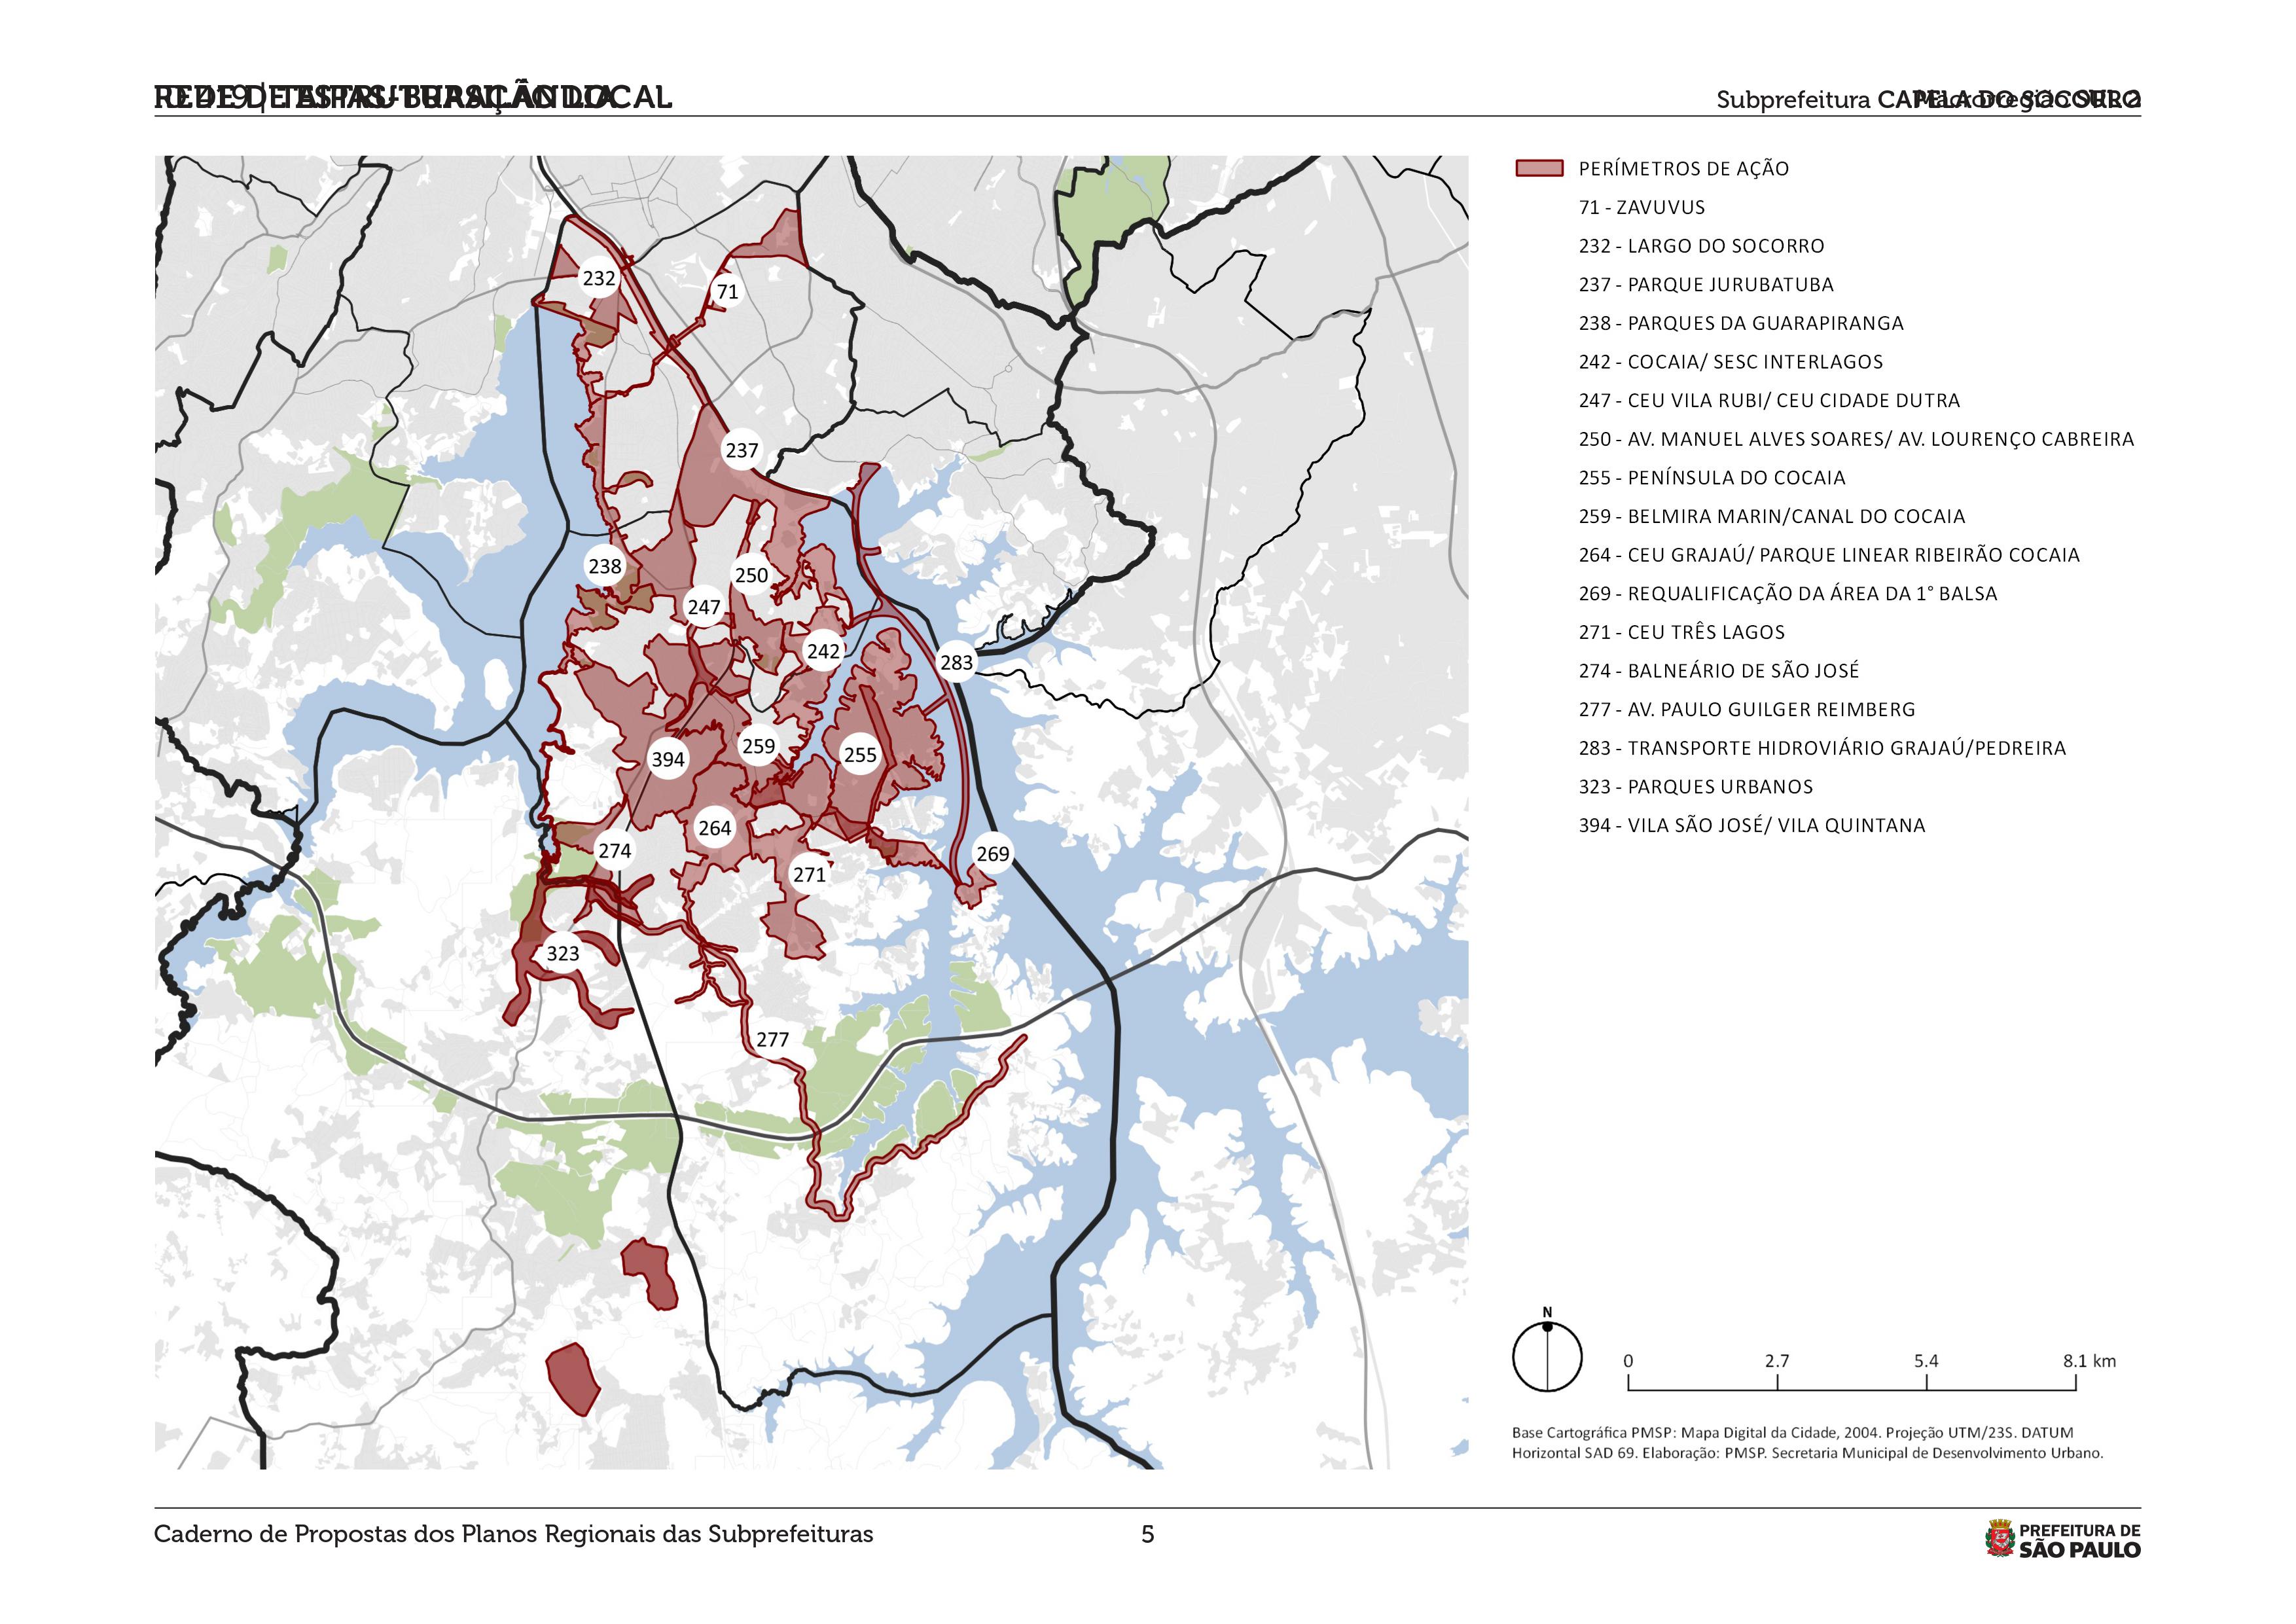 #PraCegoVer - Mapa da Subprefeitura Capela do Socorro detalhando os 17 perímetros de ação